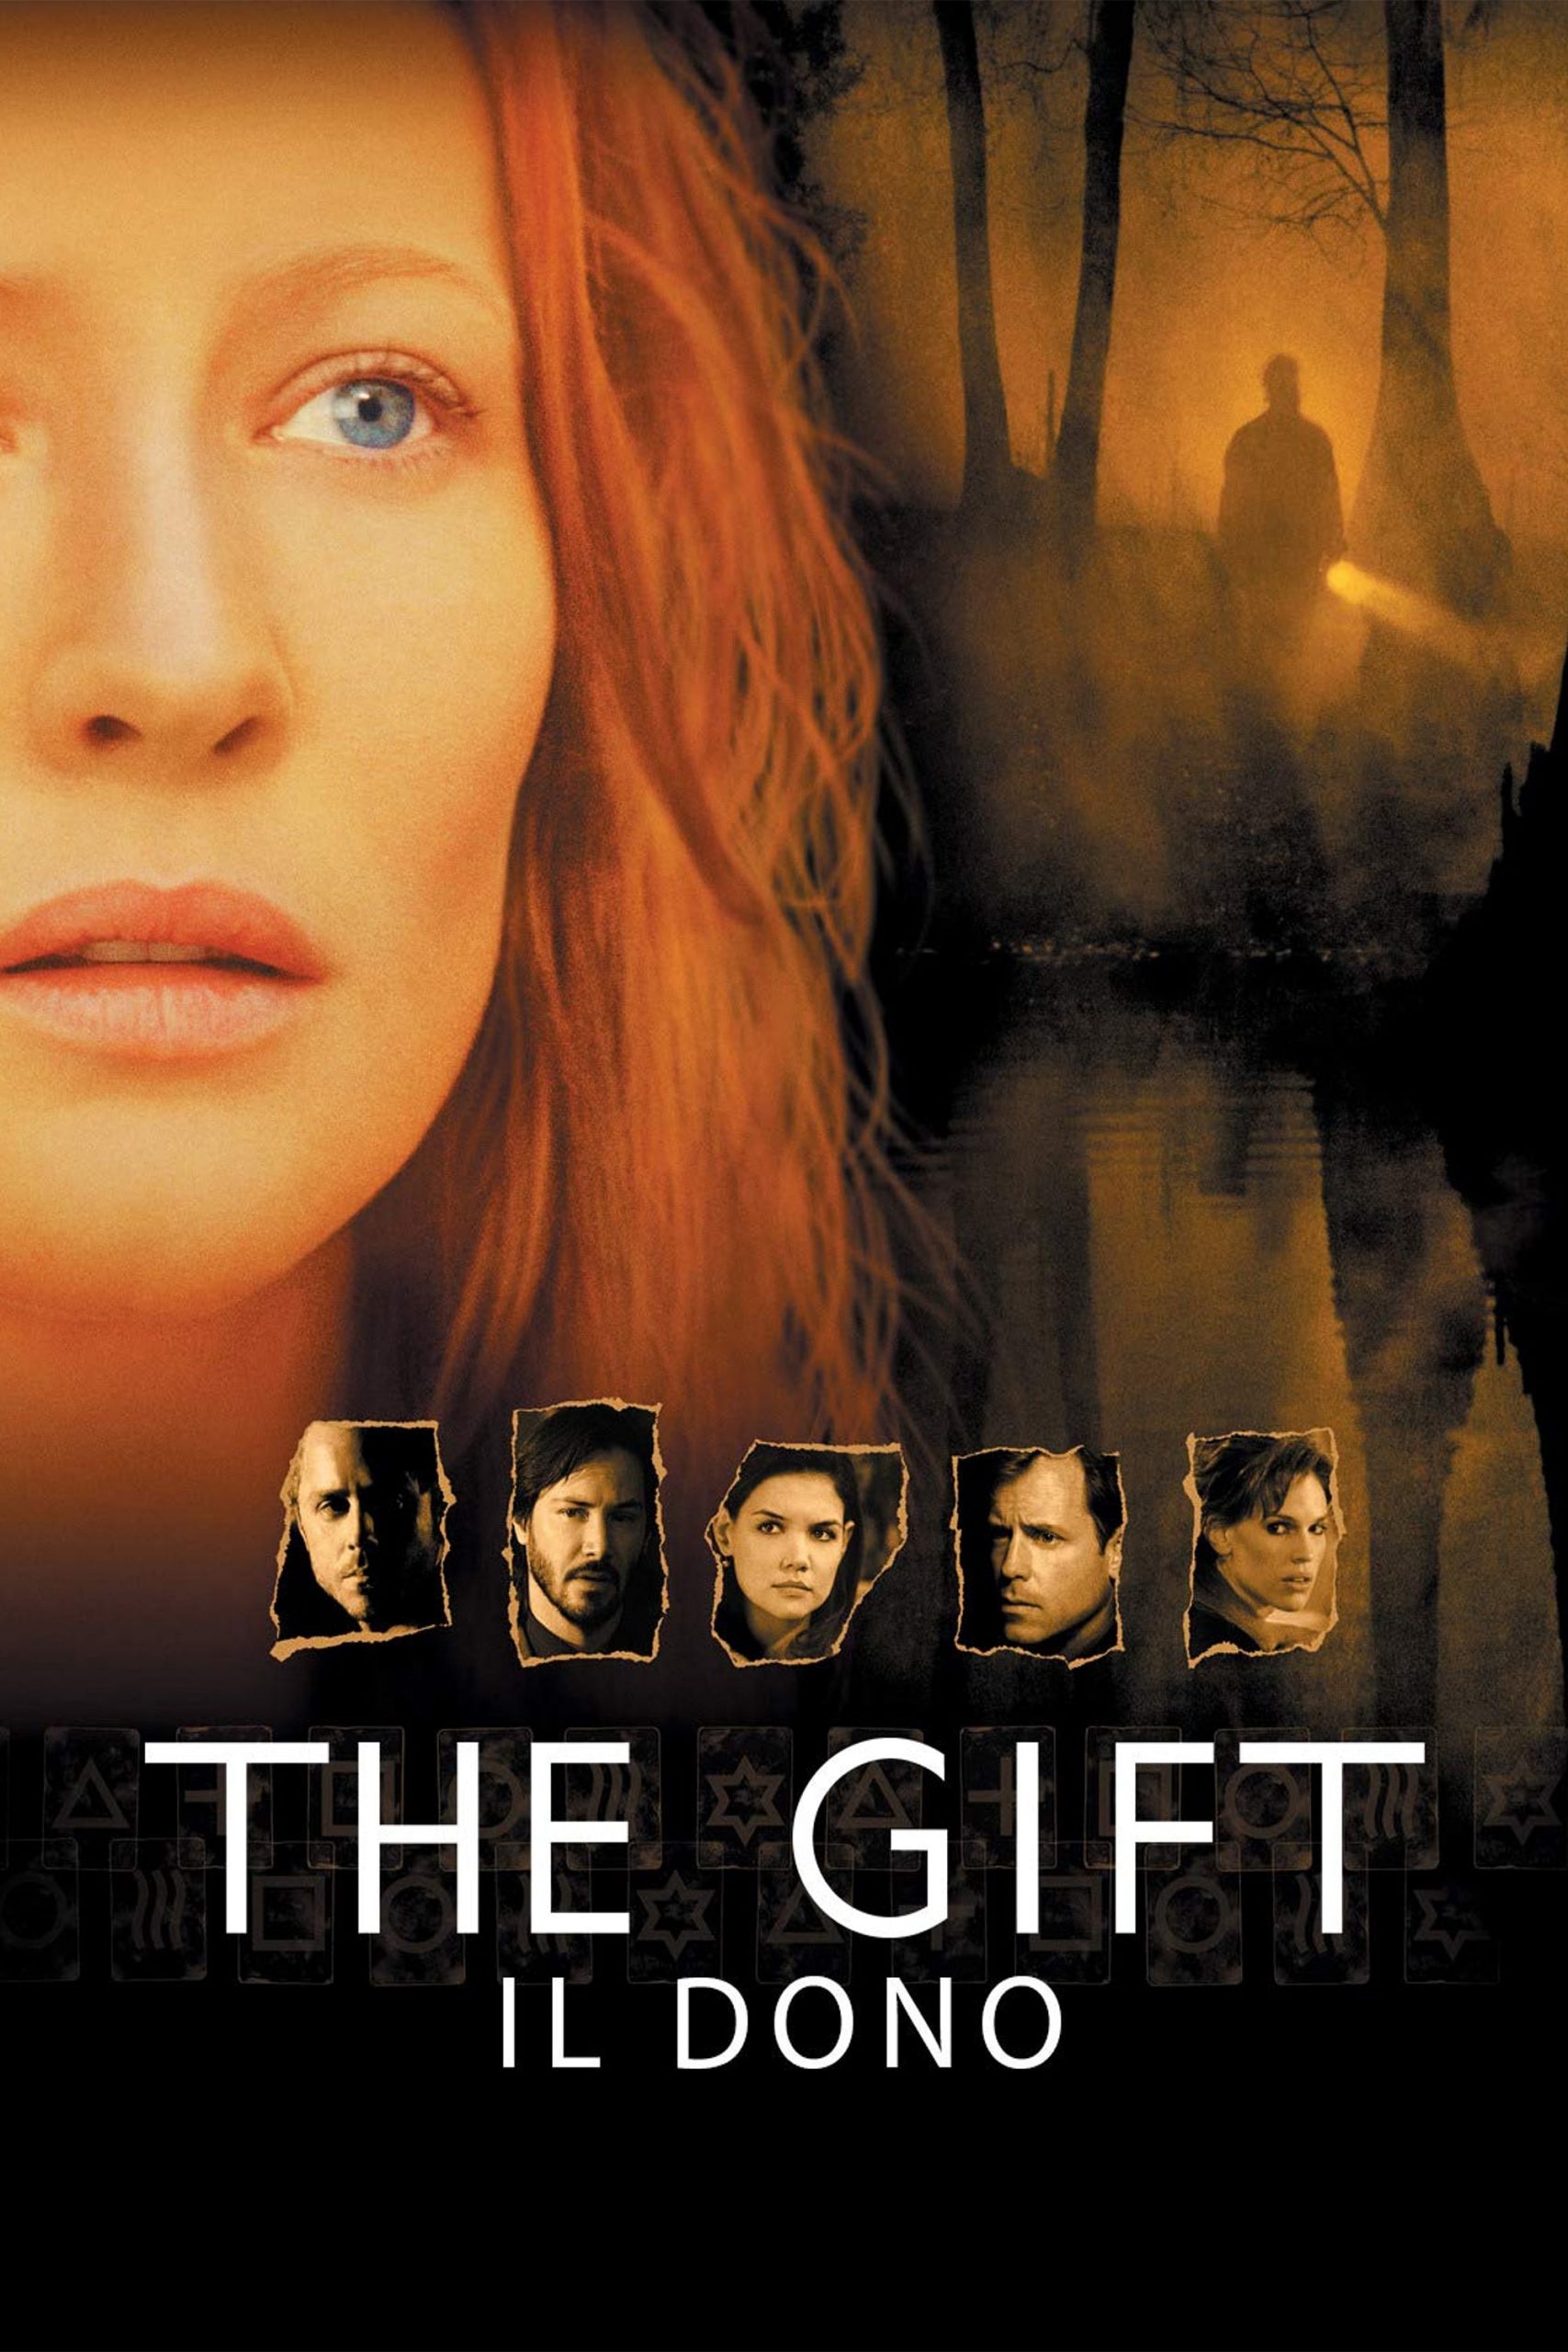 The Gift – Il dono [HD] (2000)